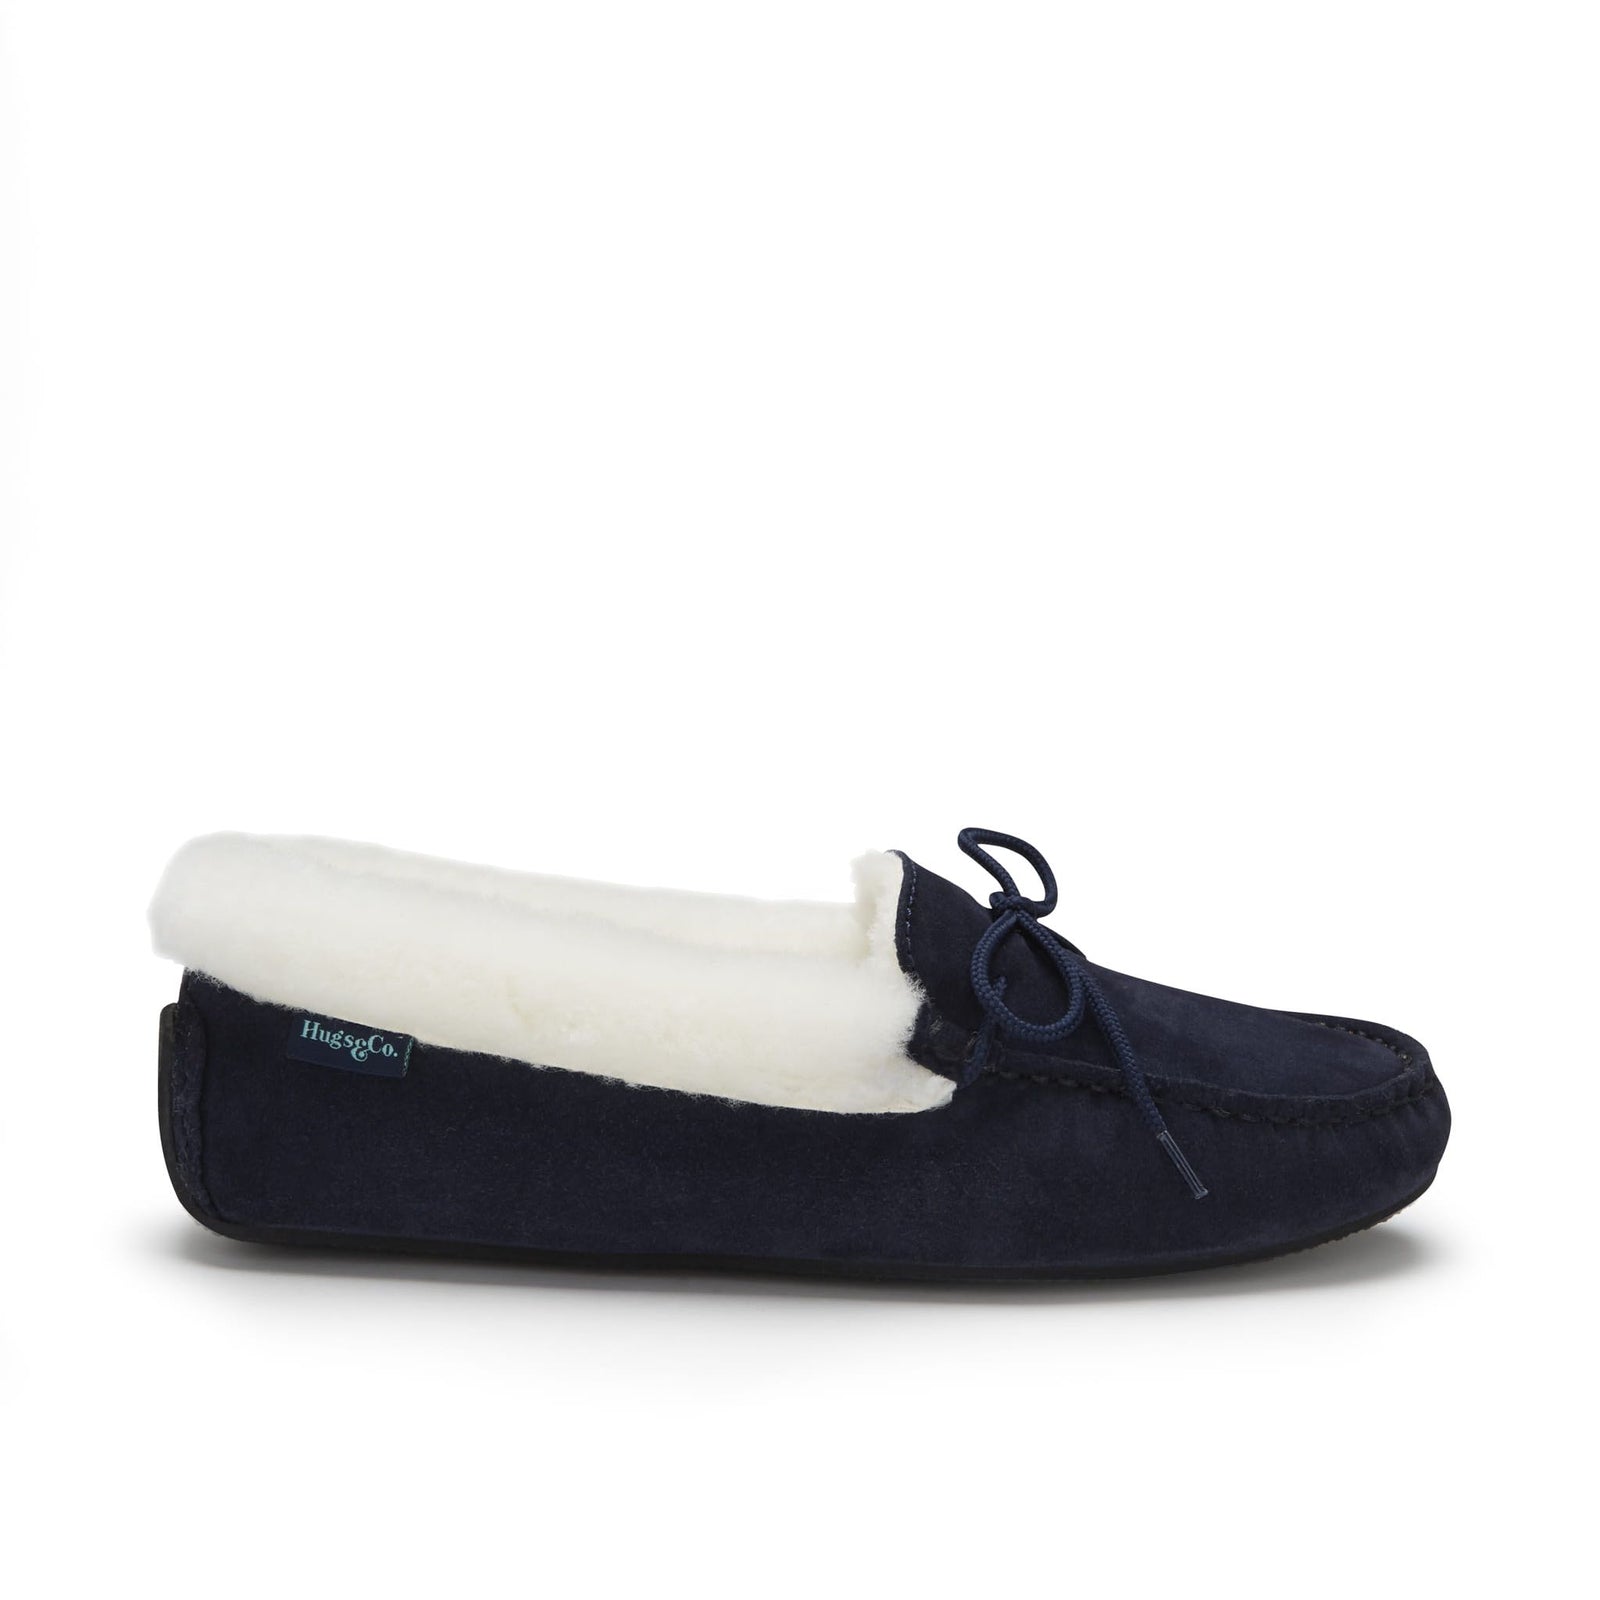 Women's slippers, sheepskin, navy blue suede